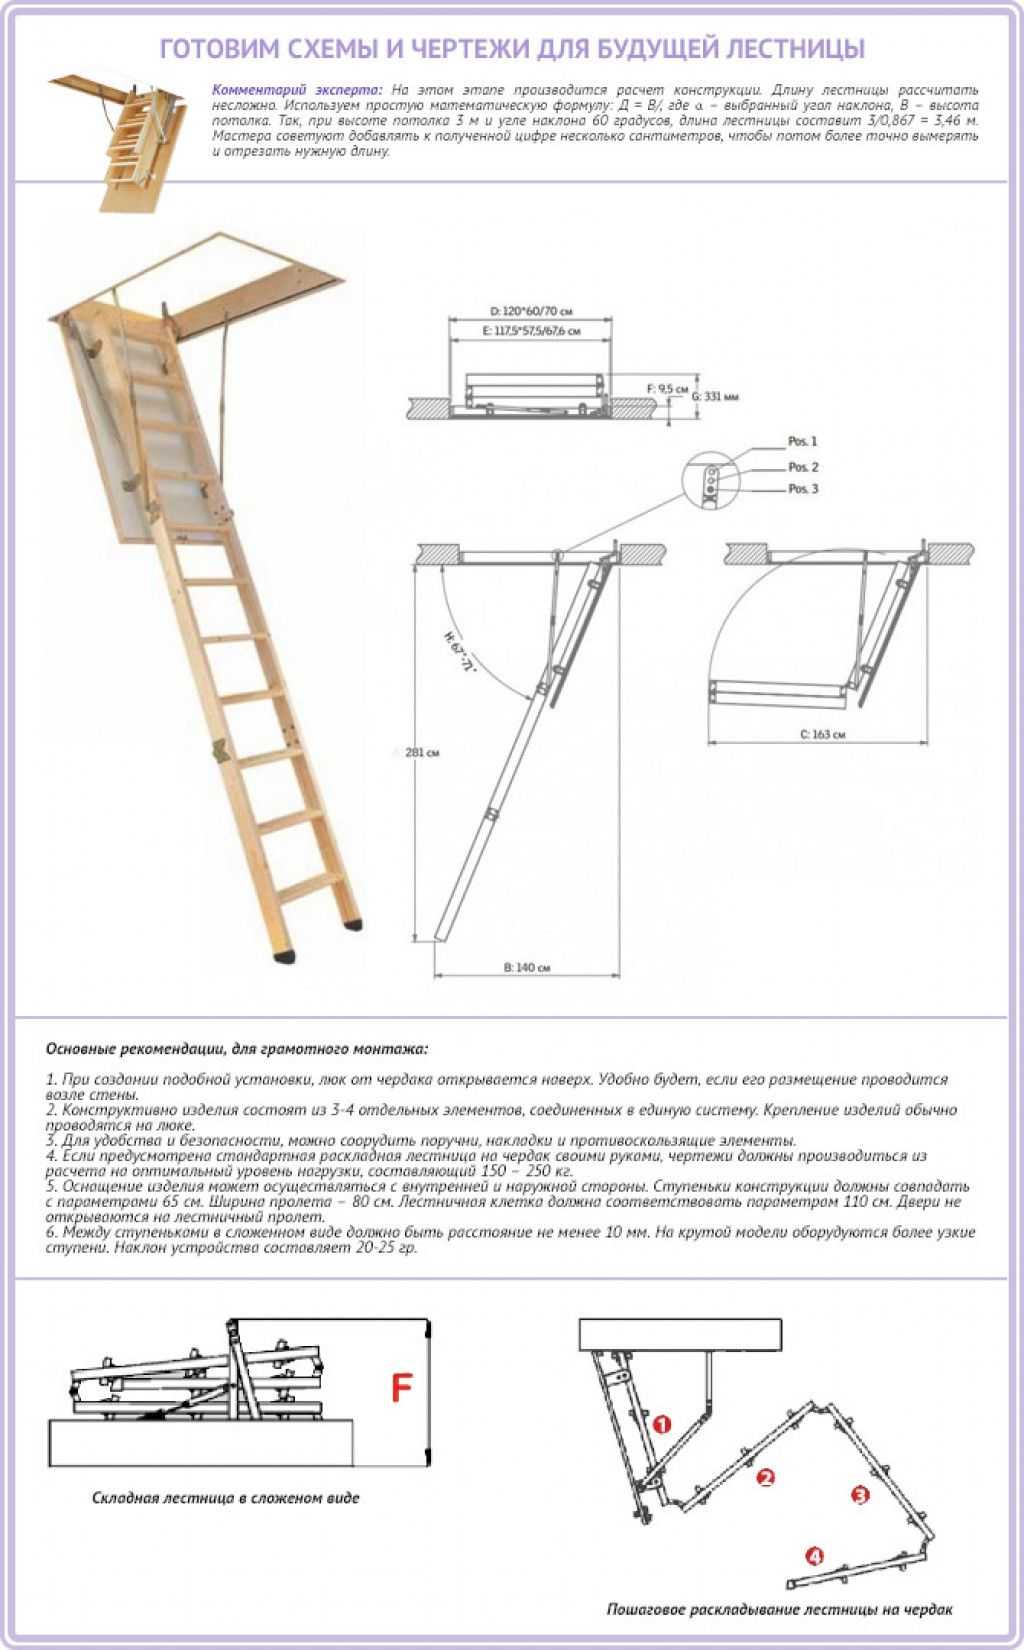 Чердачная лестница с люком размеры. Чердачная лестница с люком монтажный чертеж. Схема чердачной раскладной лестницы. Лестница чердачная складная чертеж. Лестница складная на чердак с люком чертеж.